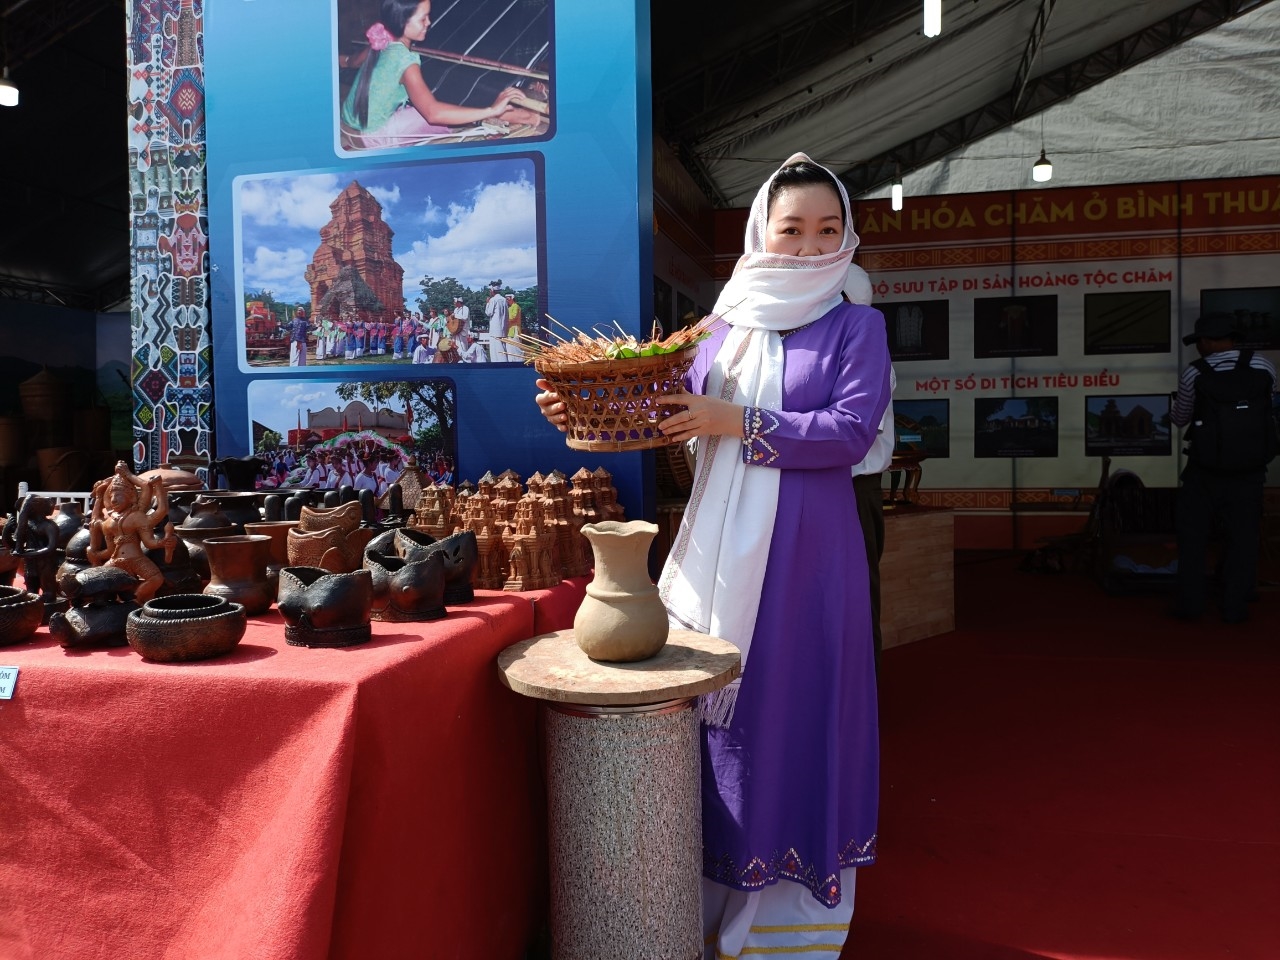 Trang phục truyền thống của người Chăm tỉnh Bình Thuận